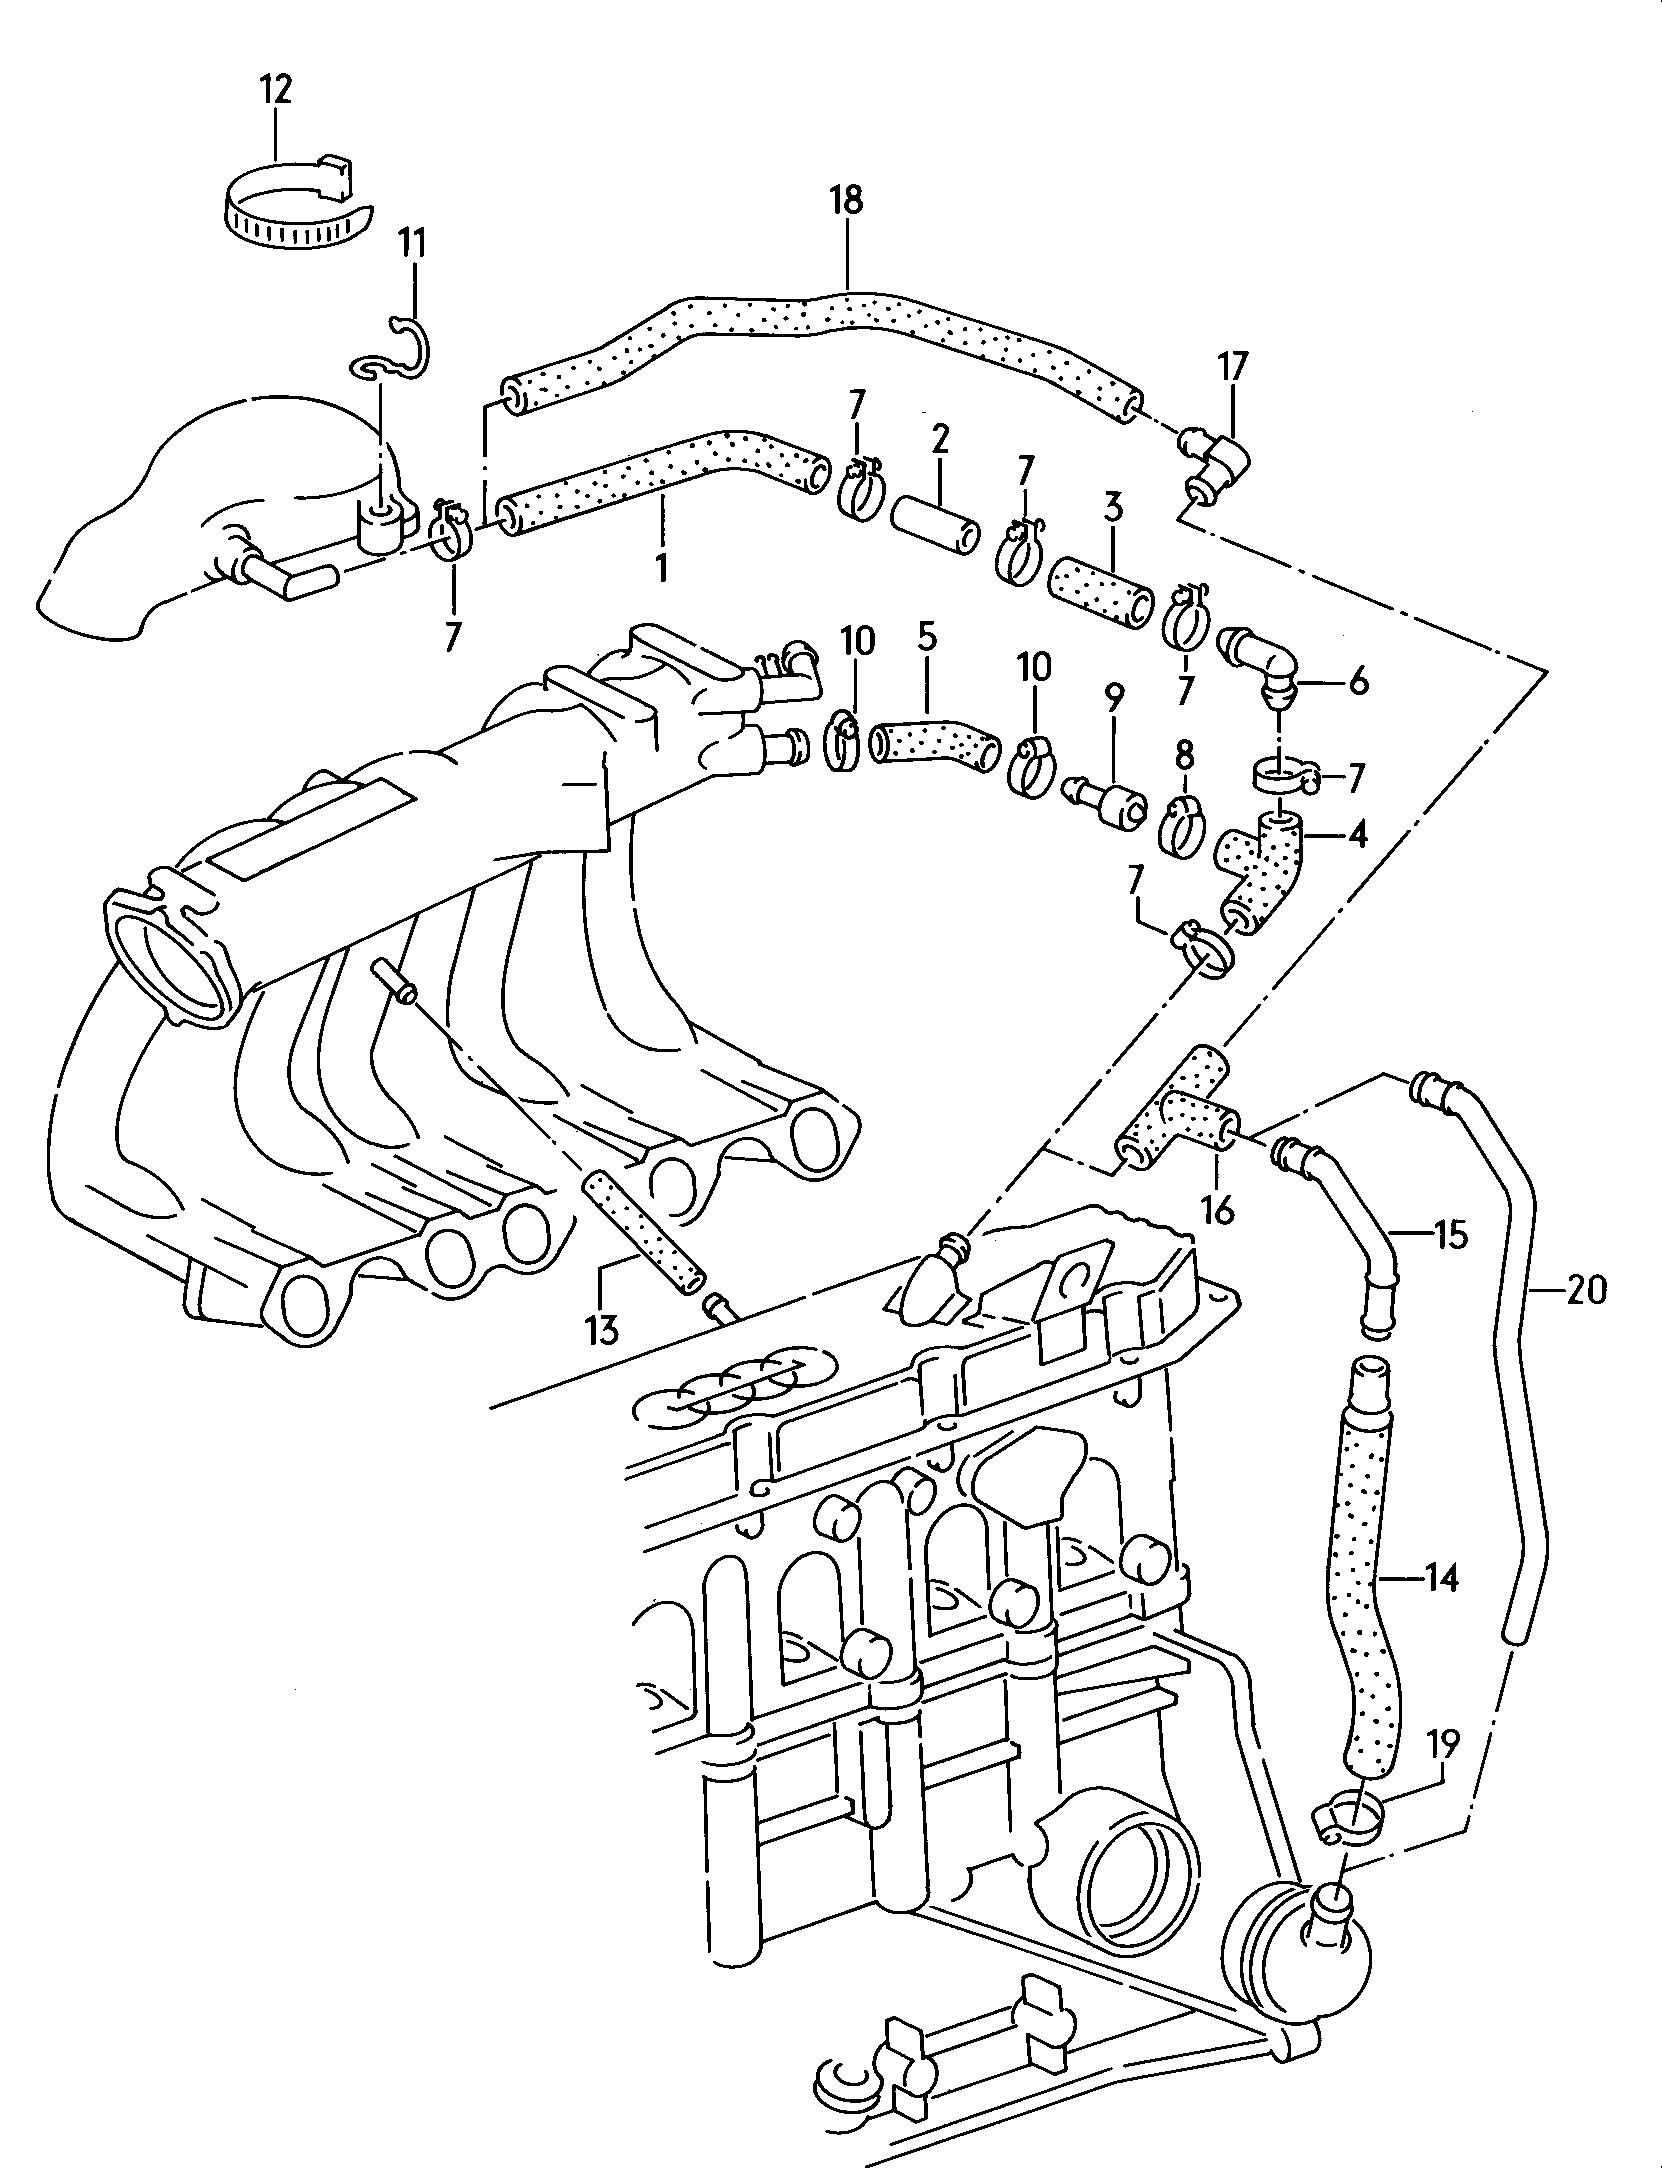 onderdrukslangen; kleppenhuis; ontluchtingsventiel - Audi quattro(QUAT)  